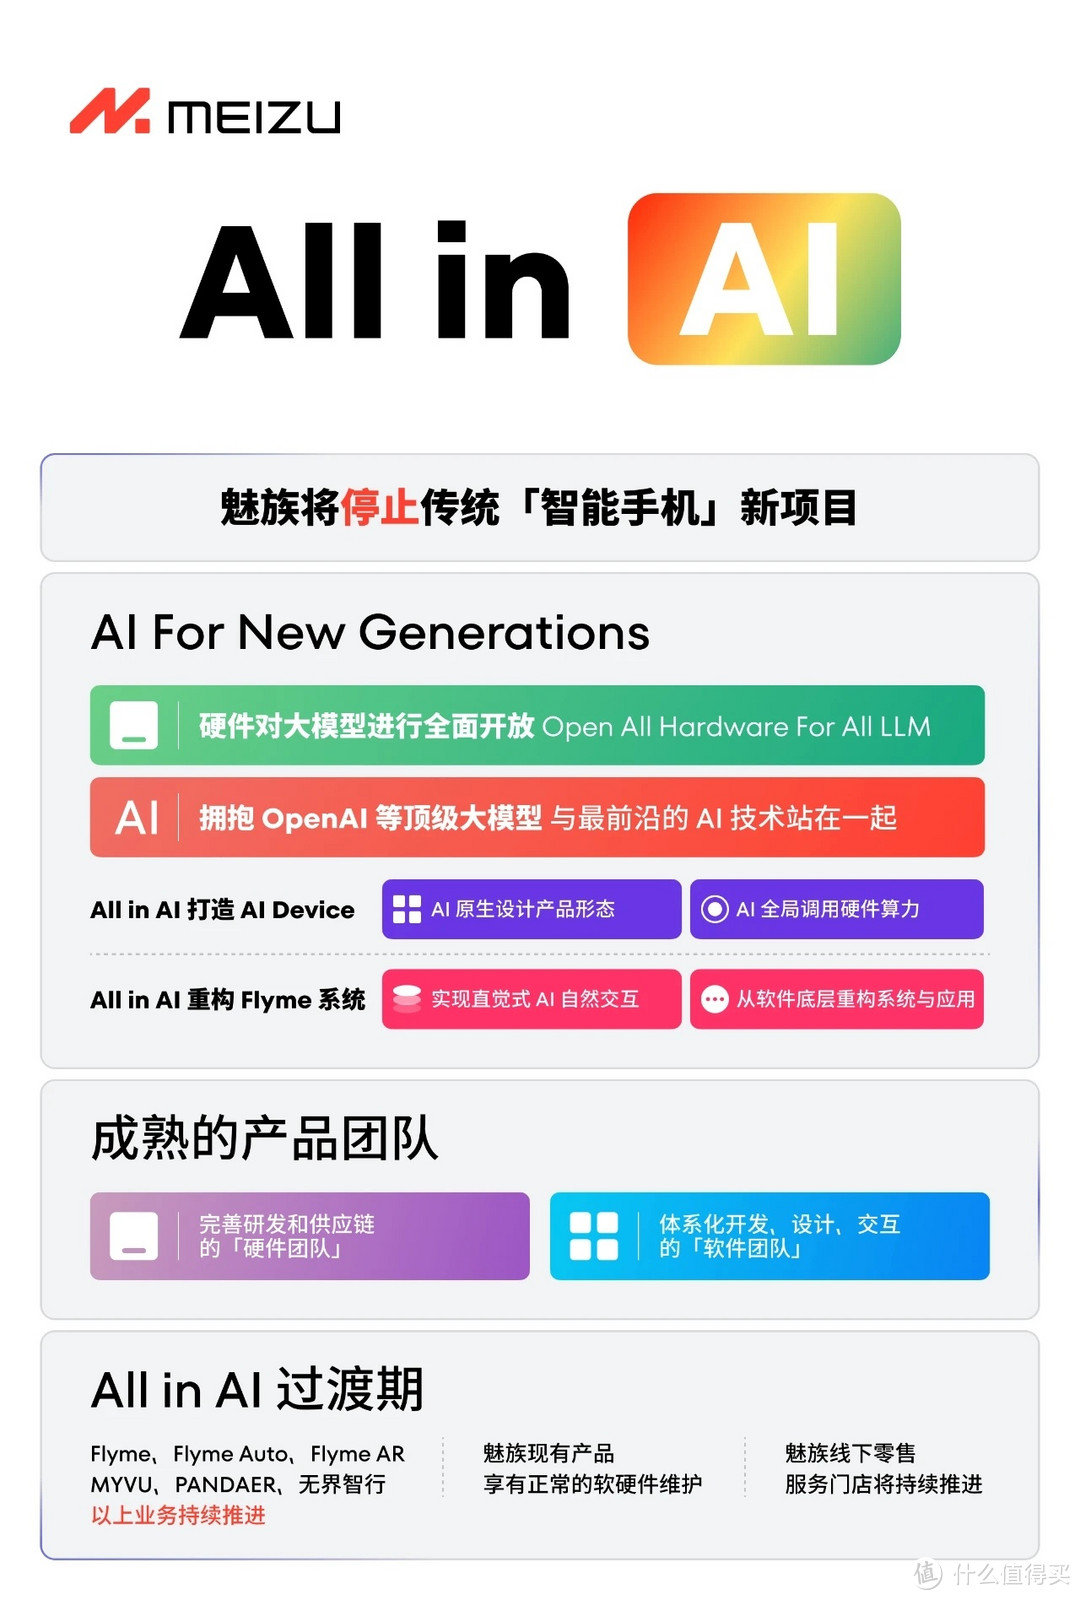 魅族决定 All in AI，将停止传统「智能手机」新项目。